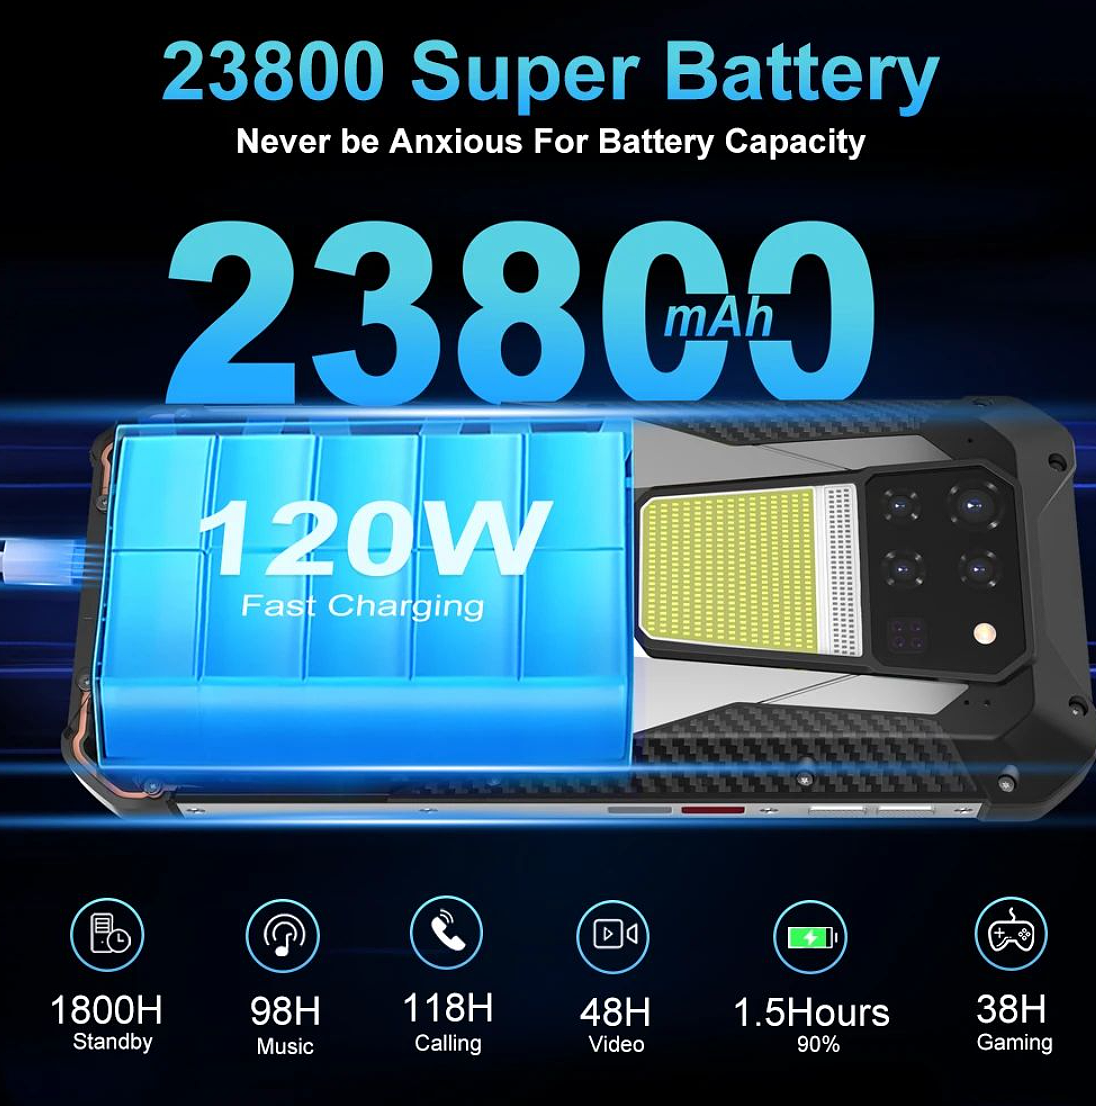 Unihertz Tank 3 三防手机发布：23800mAh 超大电池，首发价 500 美元 - 3